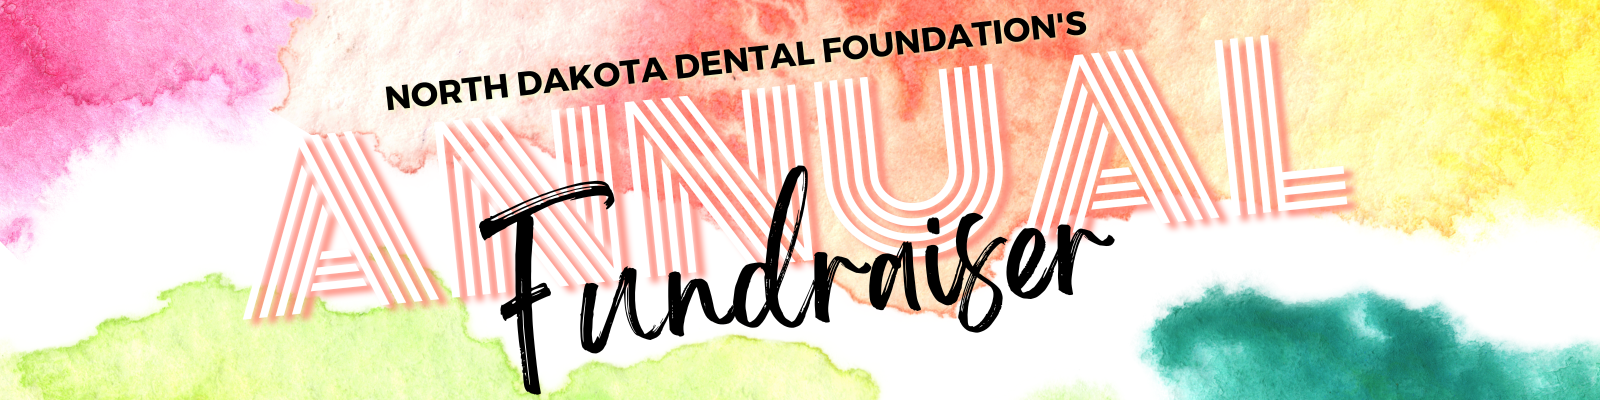 North Dakota Dental Foundation's (1600 × 400 px)